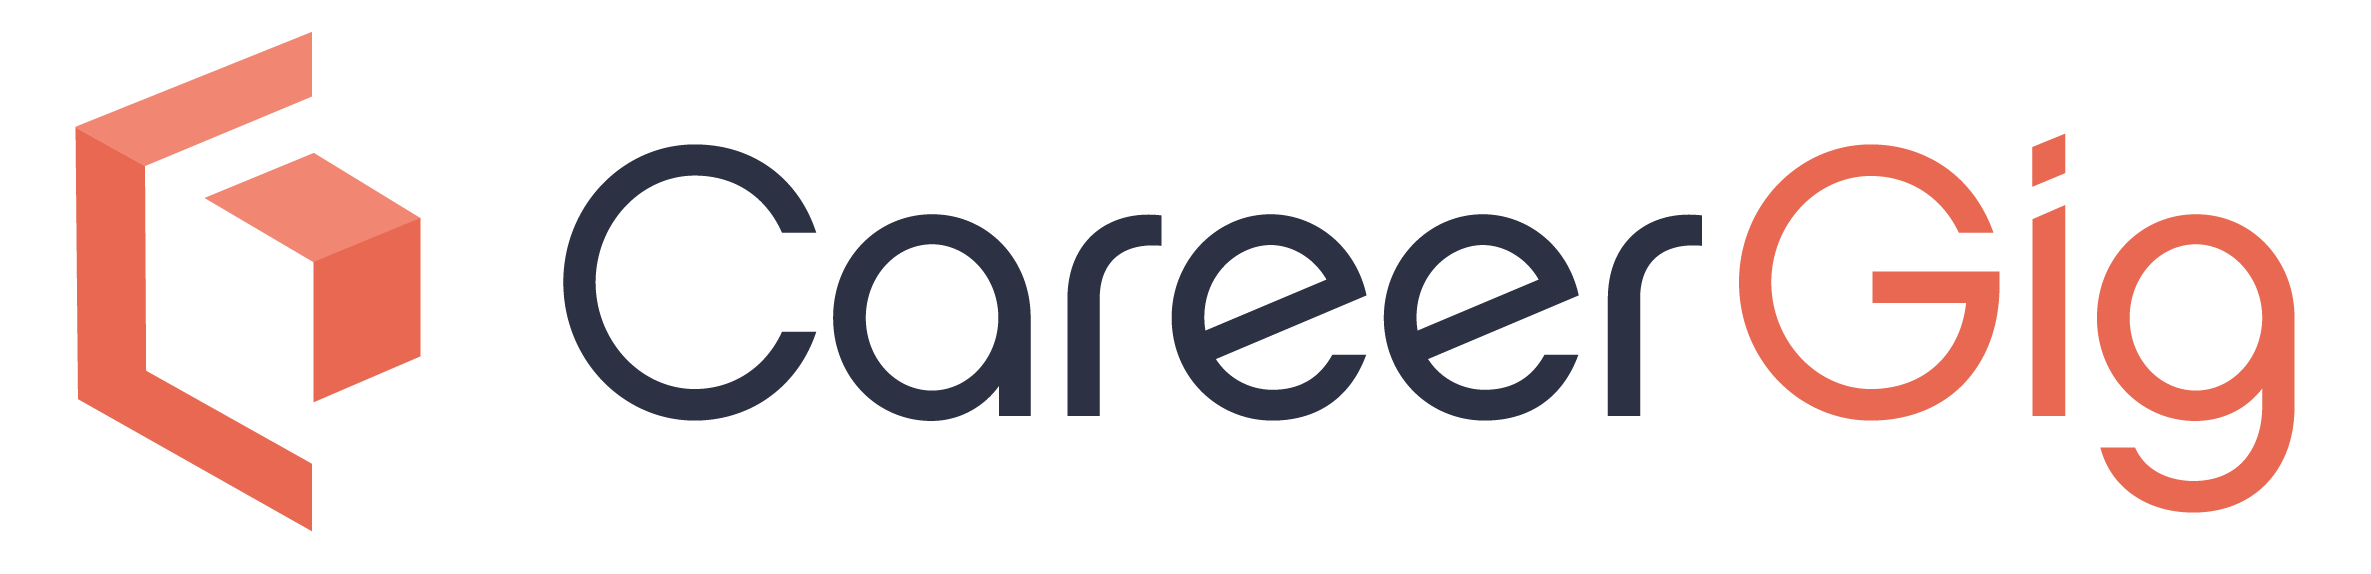 CareerGig Freelance Work Marketplace Logo